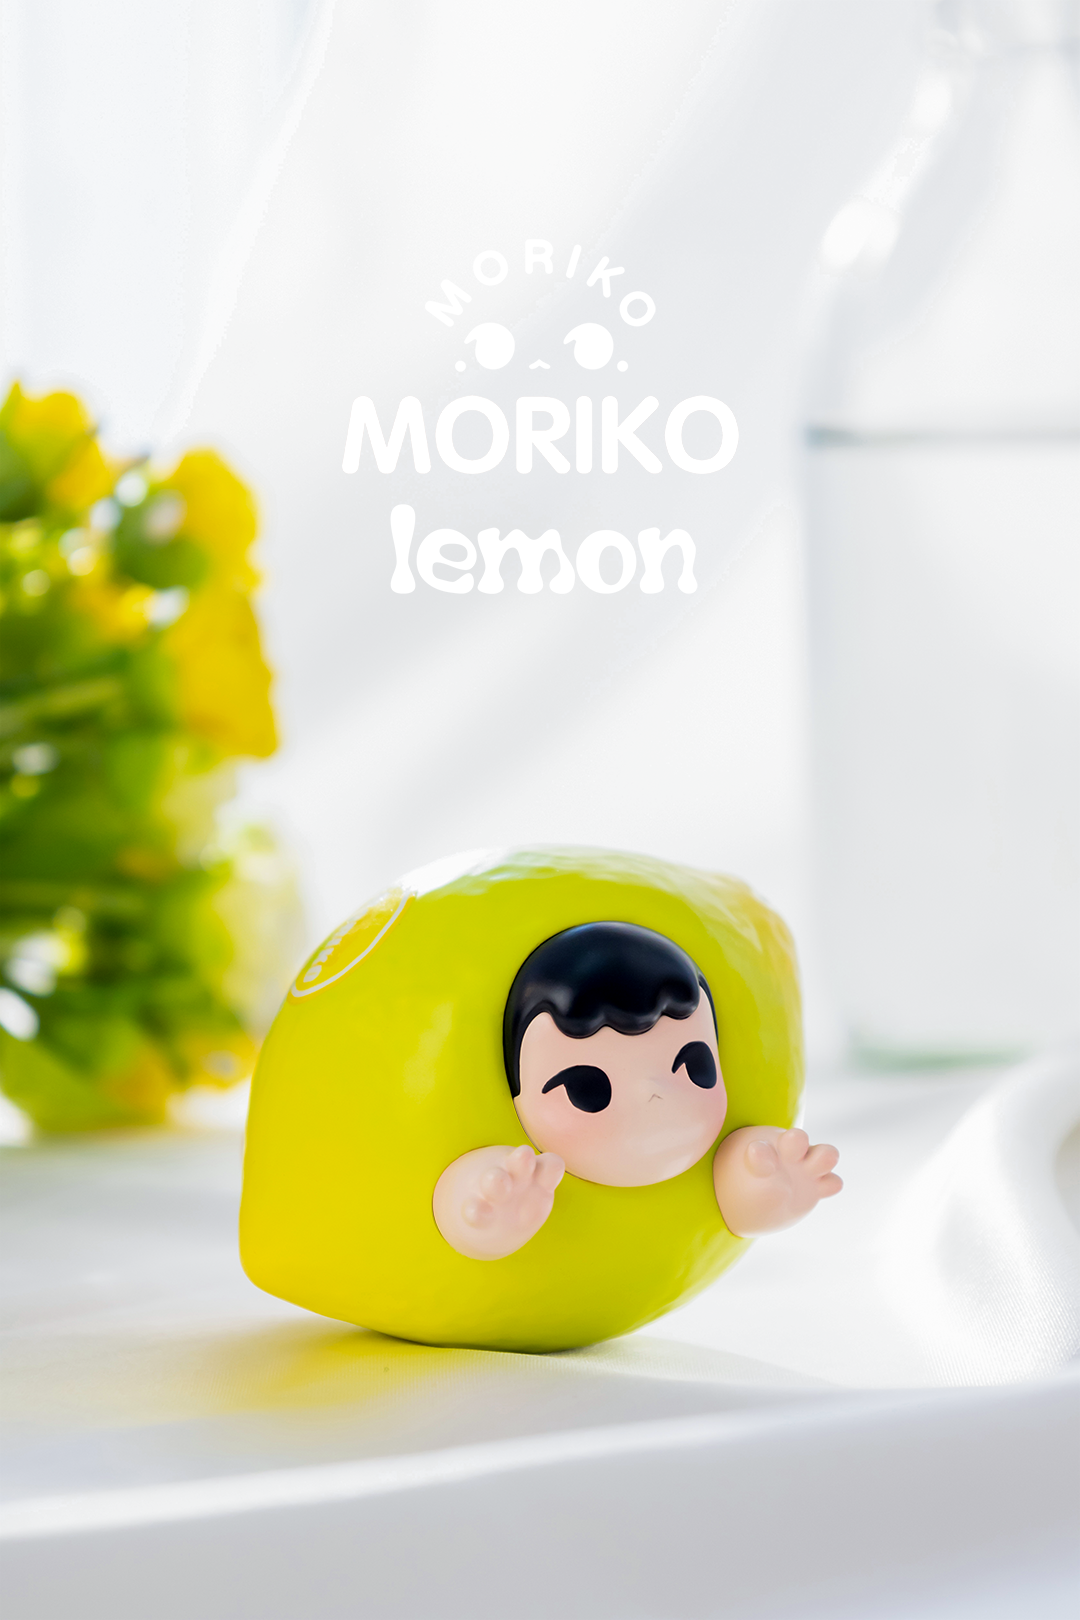 Moriko-Green Lemon by MoeDouble